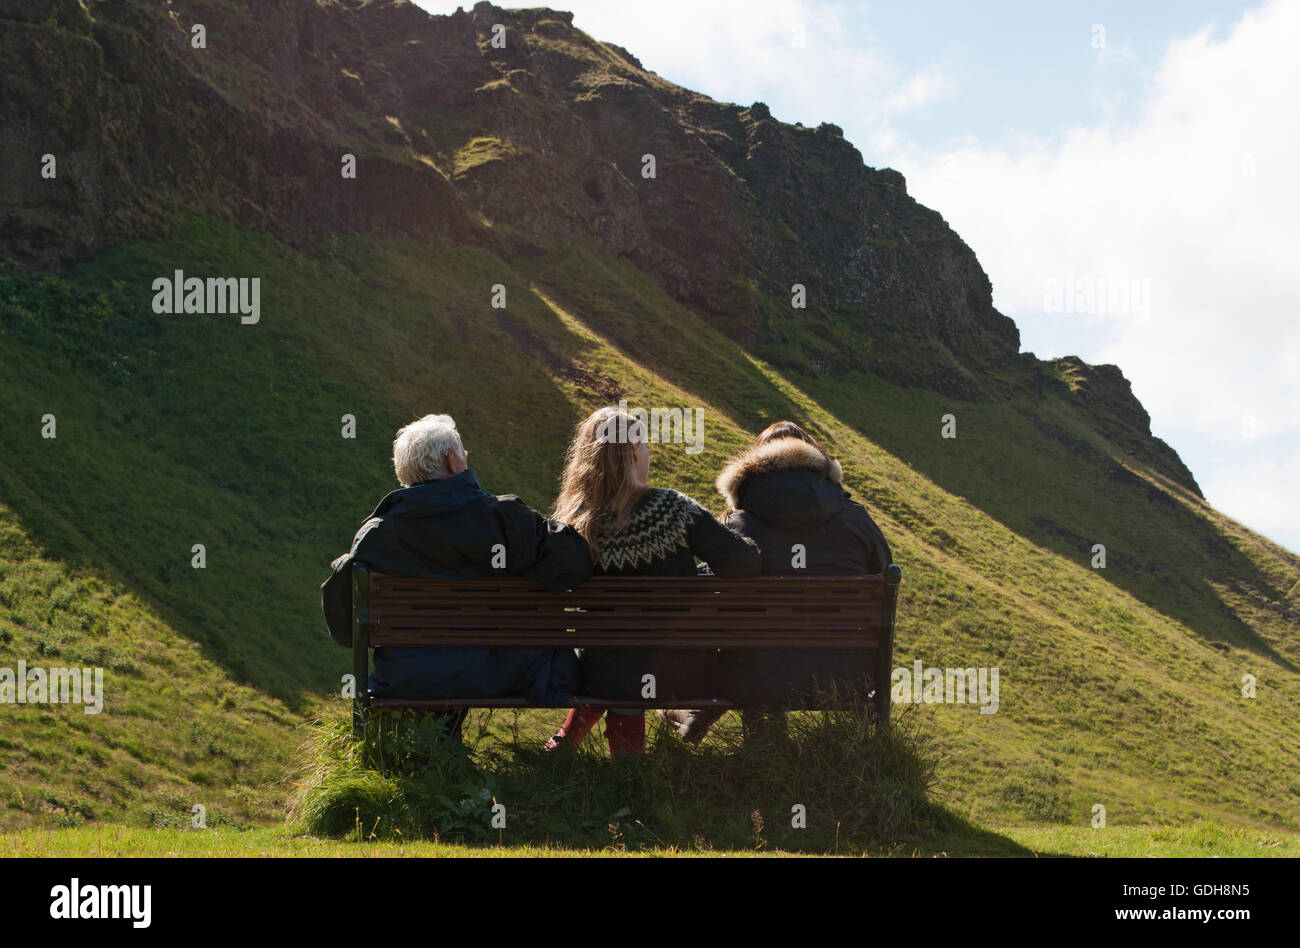 L'Islande, le nord de l'Europe : une famille islandaise assis sur un banc dans la campagne près de Seljalandsfoss, l'une des plus célèbres cascades islandaise Banque D'Images